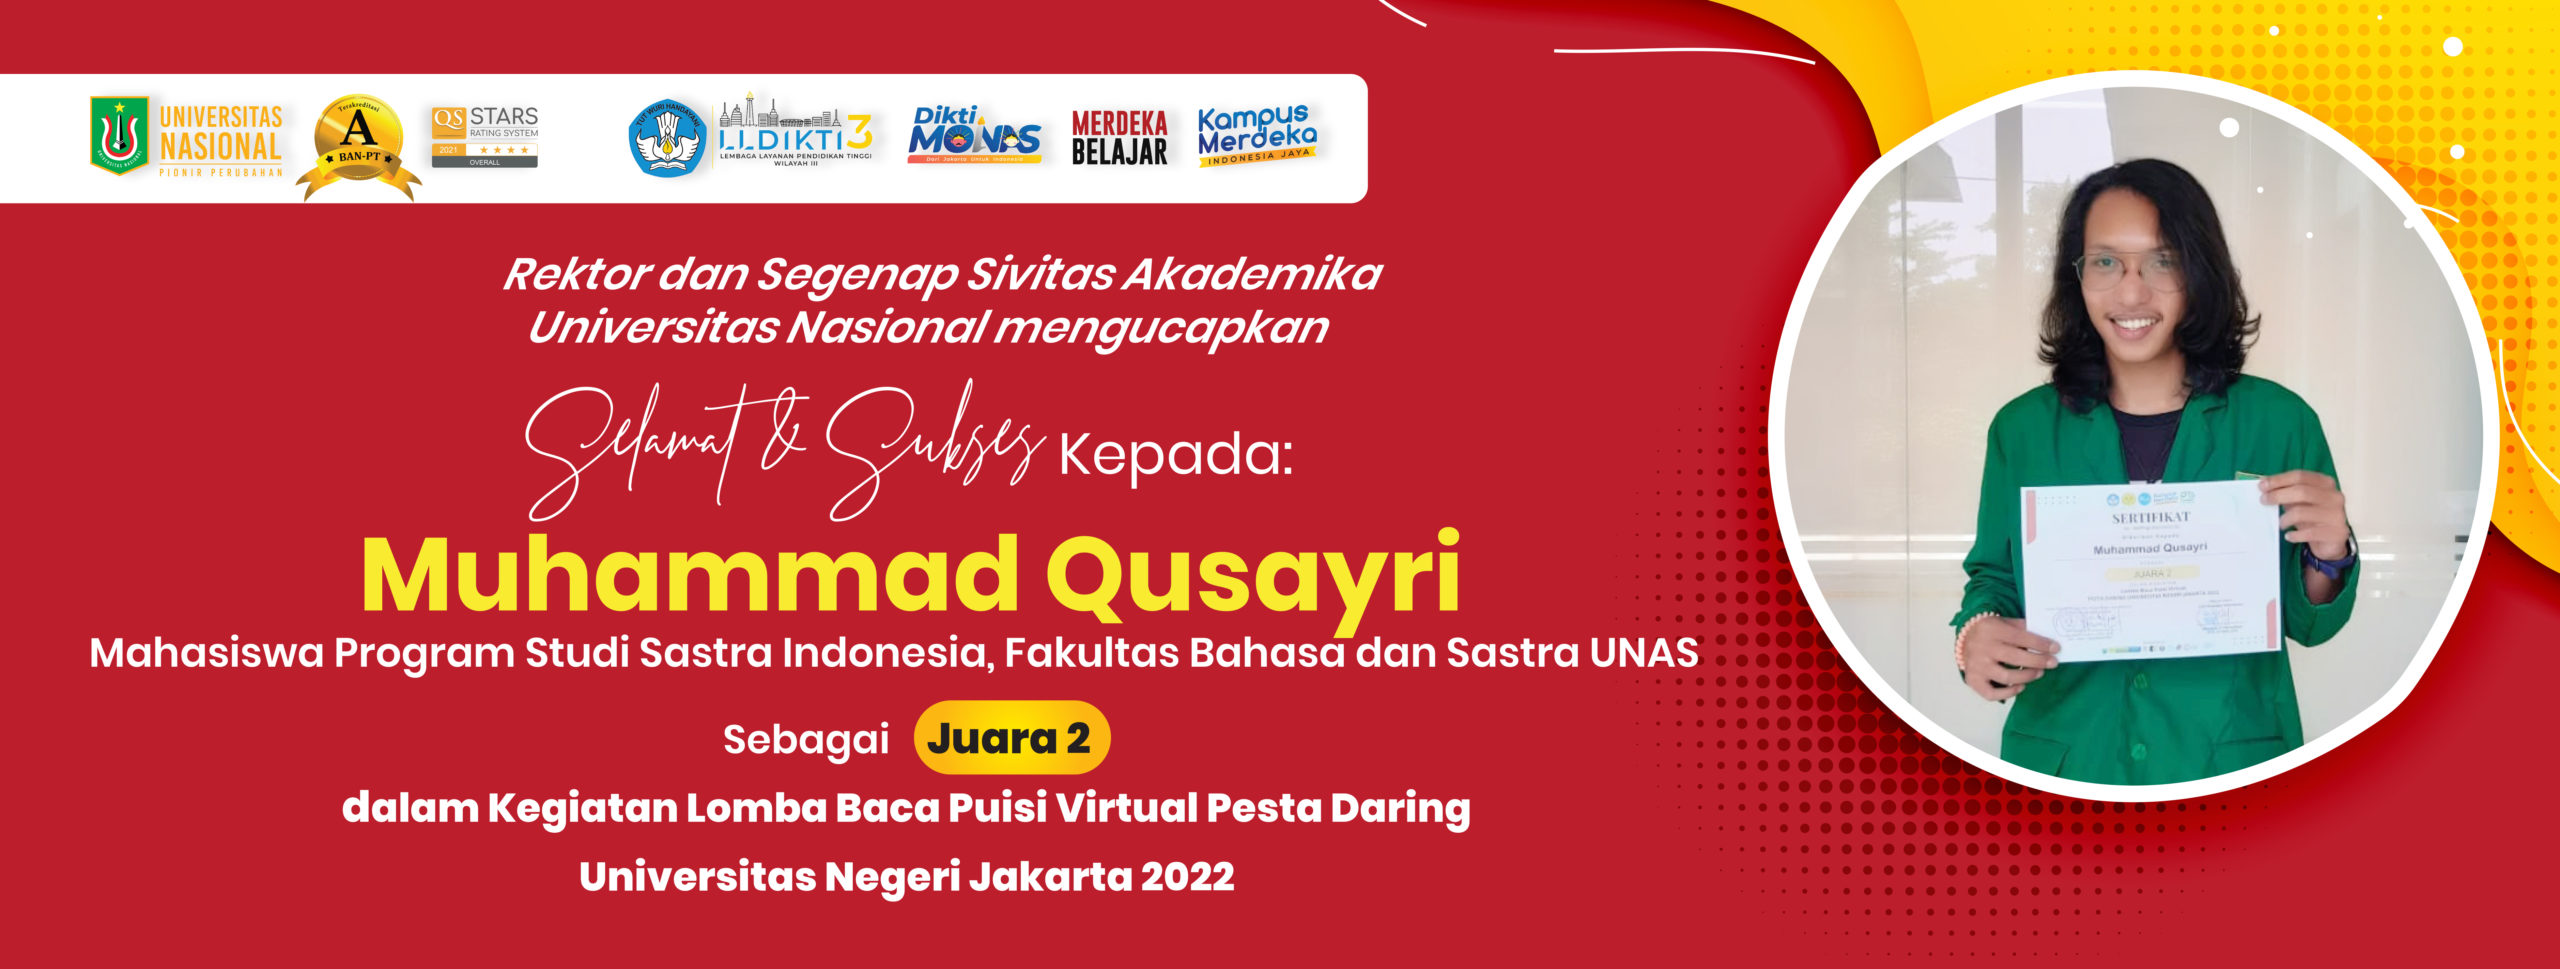 Prestasi Sdr. Muhammad Qusayri Mahasiswa Program Studi Sastra Indonesia, FBS UNAS